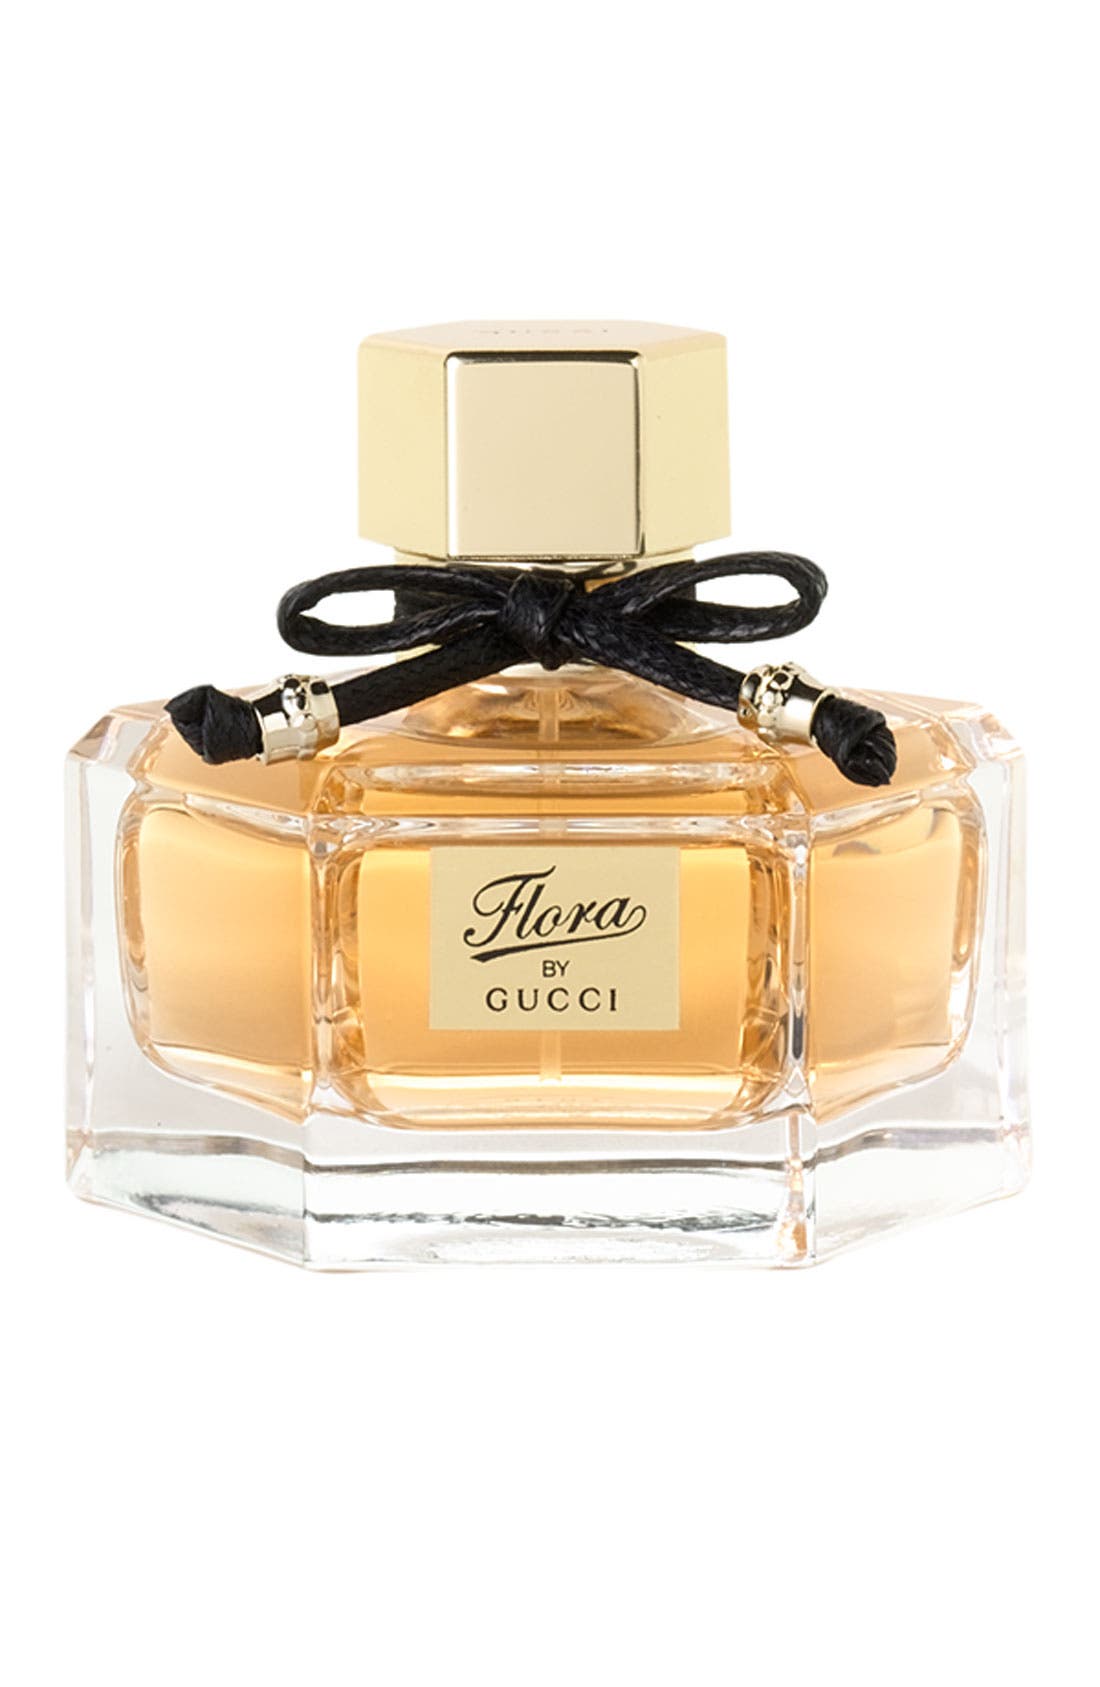 Gucci 'Flora by Gucci' Eau de Parfum 